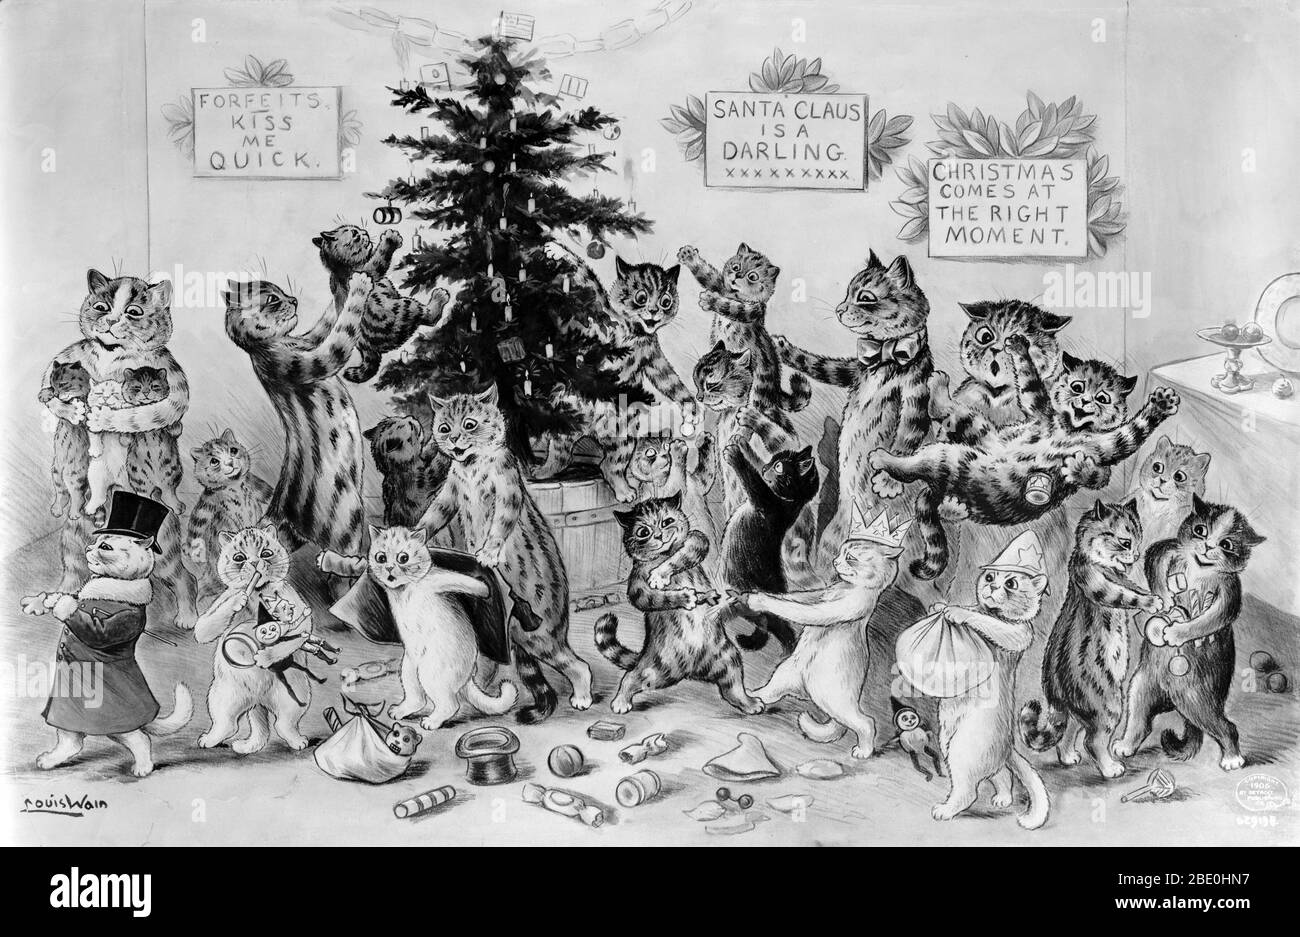 Titel: 'Katzen schmücken Weihnachtsbaum'. Ein Weihnachtsbaum ist ein geschmückter Baum, in der Regel eine immergrüne Nadelbaum wie Fichte, Kiefer oder Tanne mit der Feier von Weihnachten verbunden. Der Baum war traditionell mit Esswaren wie Äpfeln, Nüssen oder anderen Lebensmitteln geschmückt. Im 18. Jahrhundert begann es von Kerzen beleuchtet zu werden, die schließlich durch Weihnachtslichter nach dem Aufkommen der Elektrifizierung ersetzt wurden. Weihnachten ist ein jährliches Gedenken an die Geburt Jesu Christi und ein weithin beobachteter kultureller Feiertag, der am 25. Dezember von Milliarden von Menschen auf der ganzen Welt gefeiert wird. Ein Fest Stockfoto